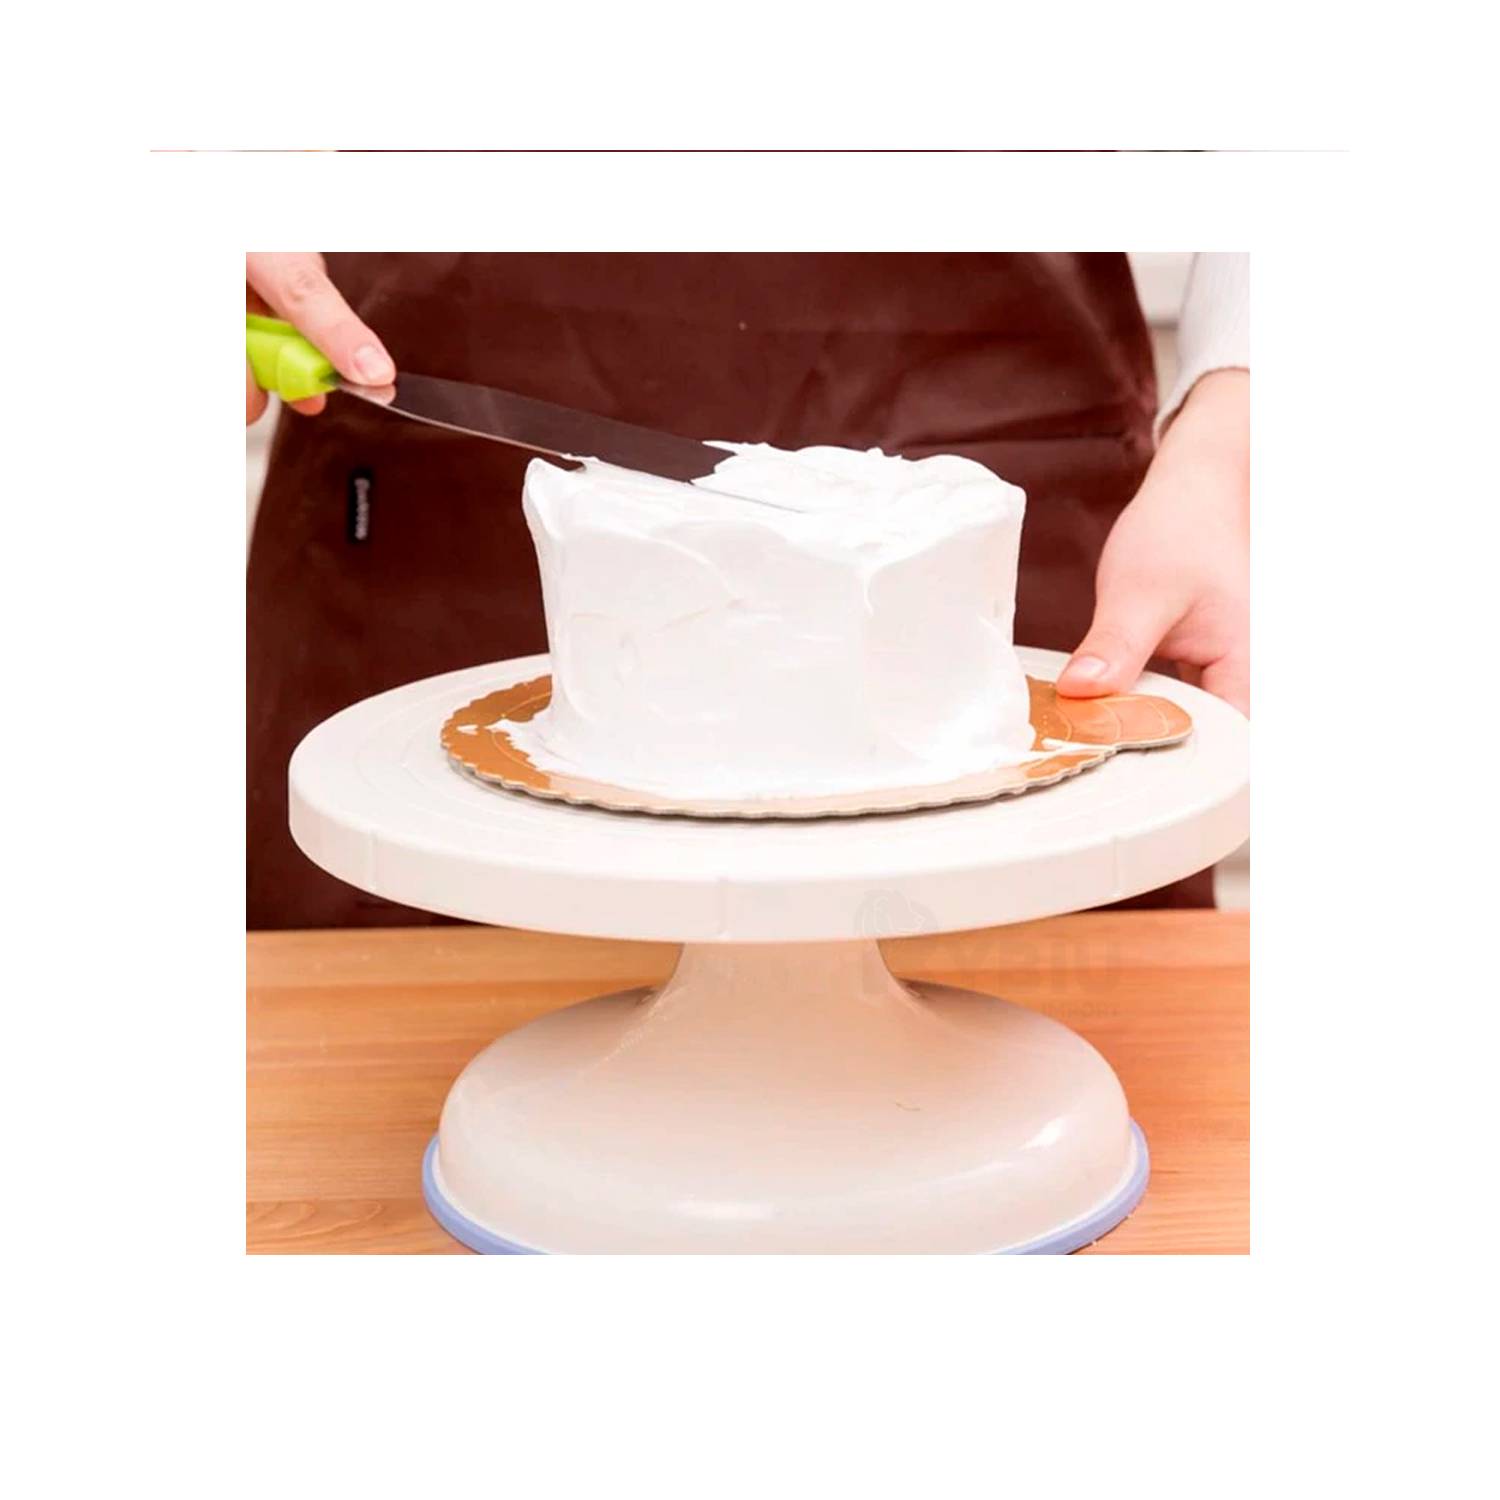 Base Giratoria de Pastelería para Decorar Tortas Blanco RYBIU IMPORT